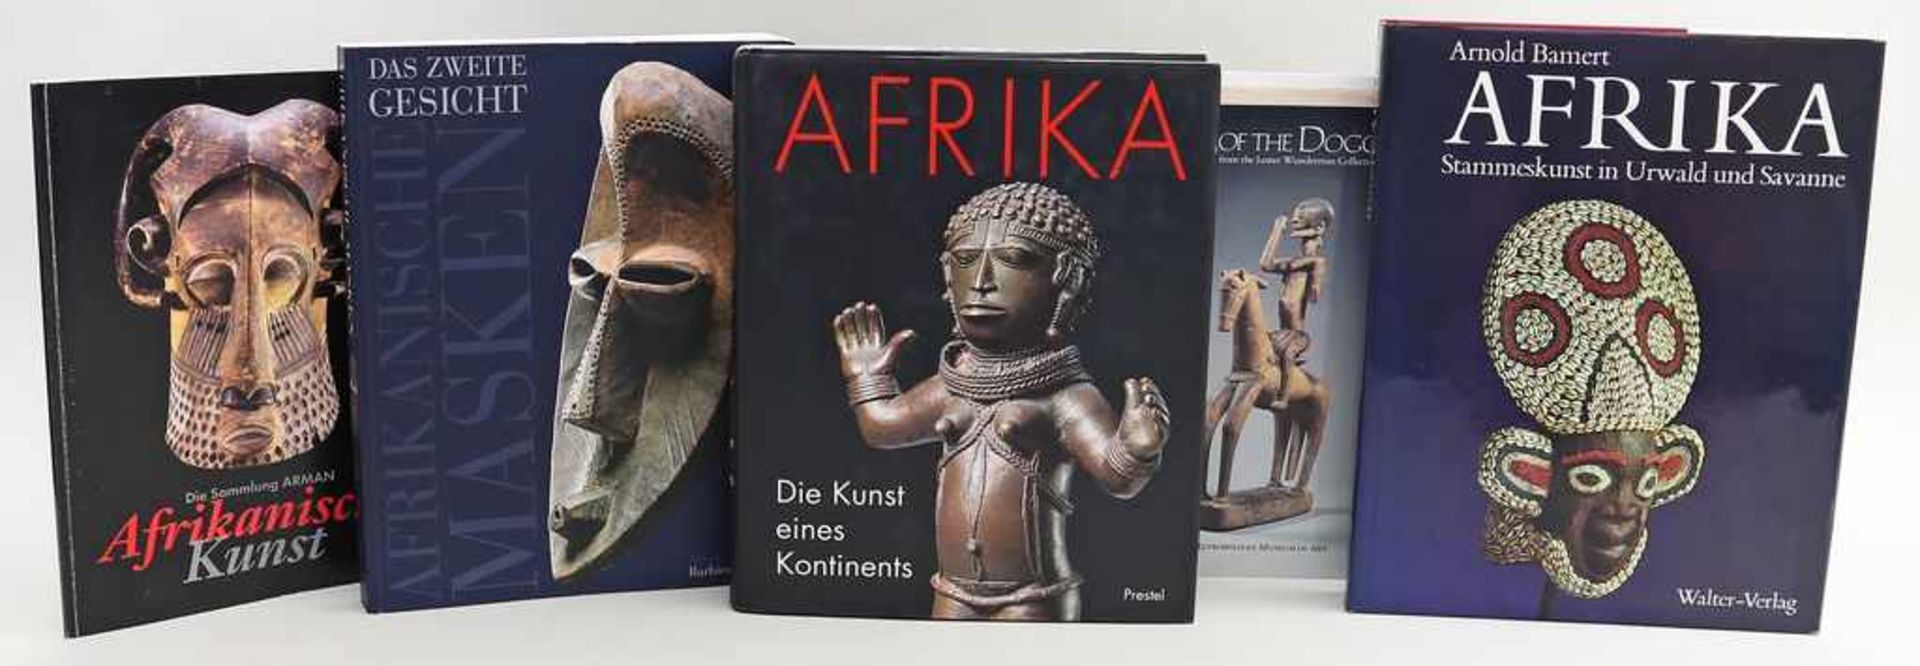 5 Bücher zum Thema afrikanische Kunst.Dabei: "Afrika - Das zweite Gesicht", "Afrika" - von